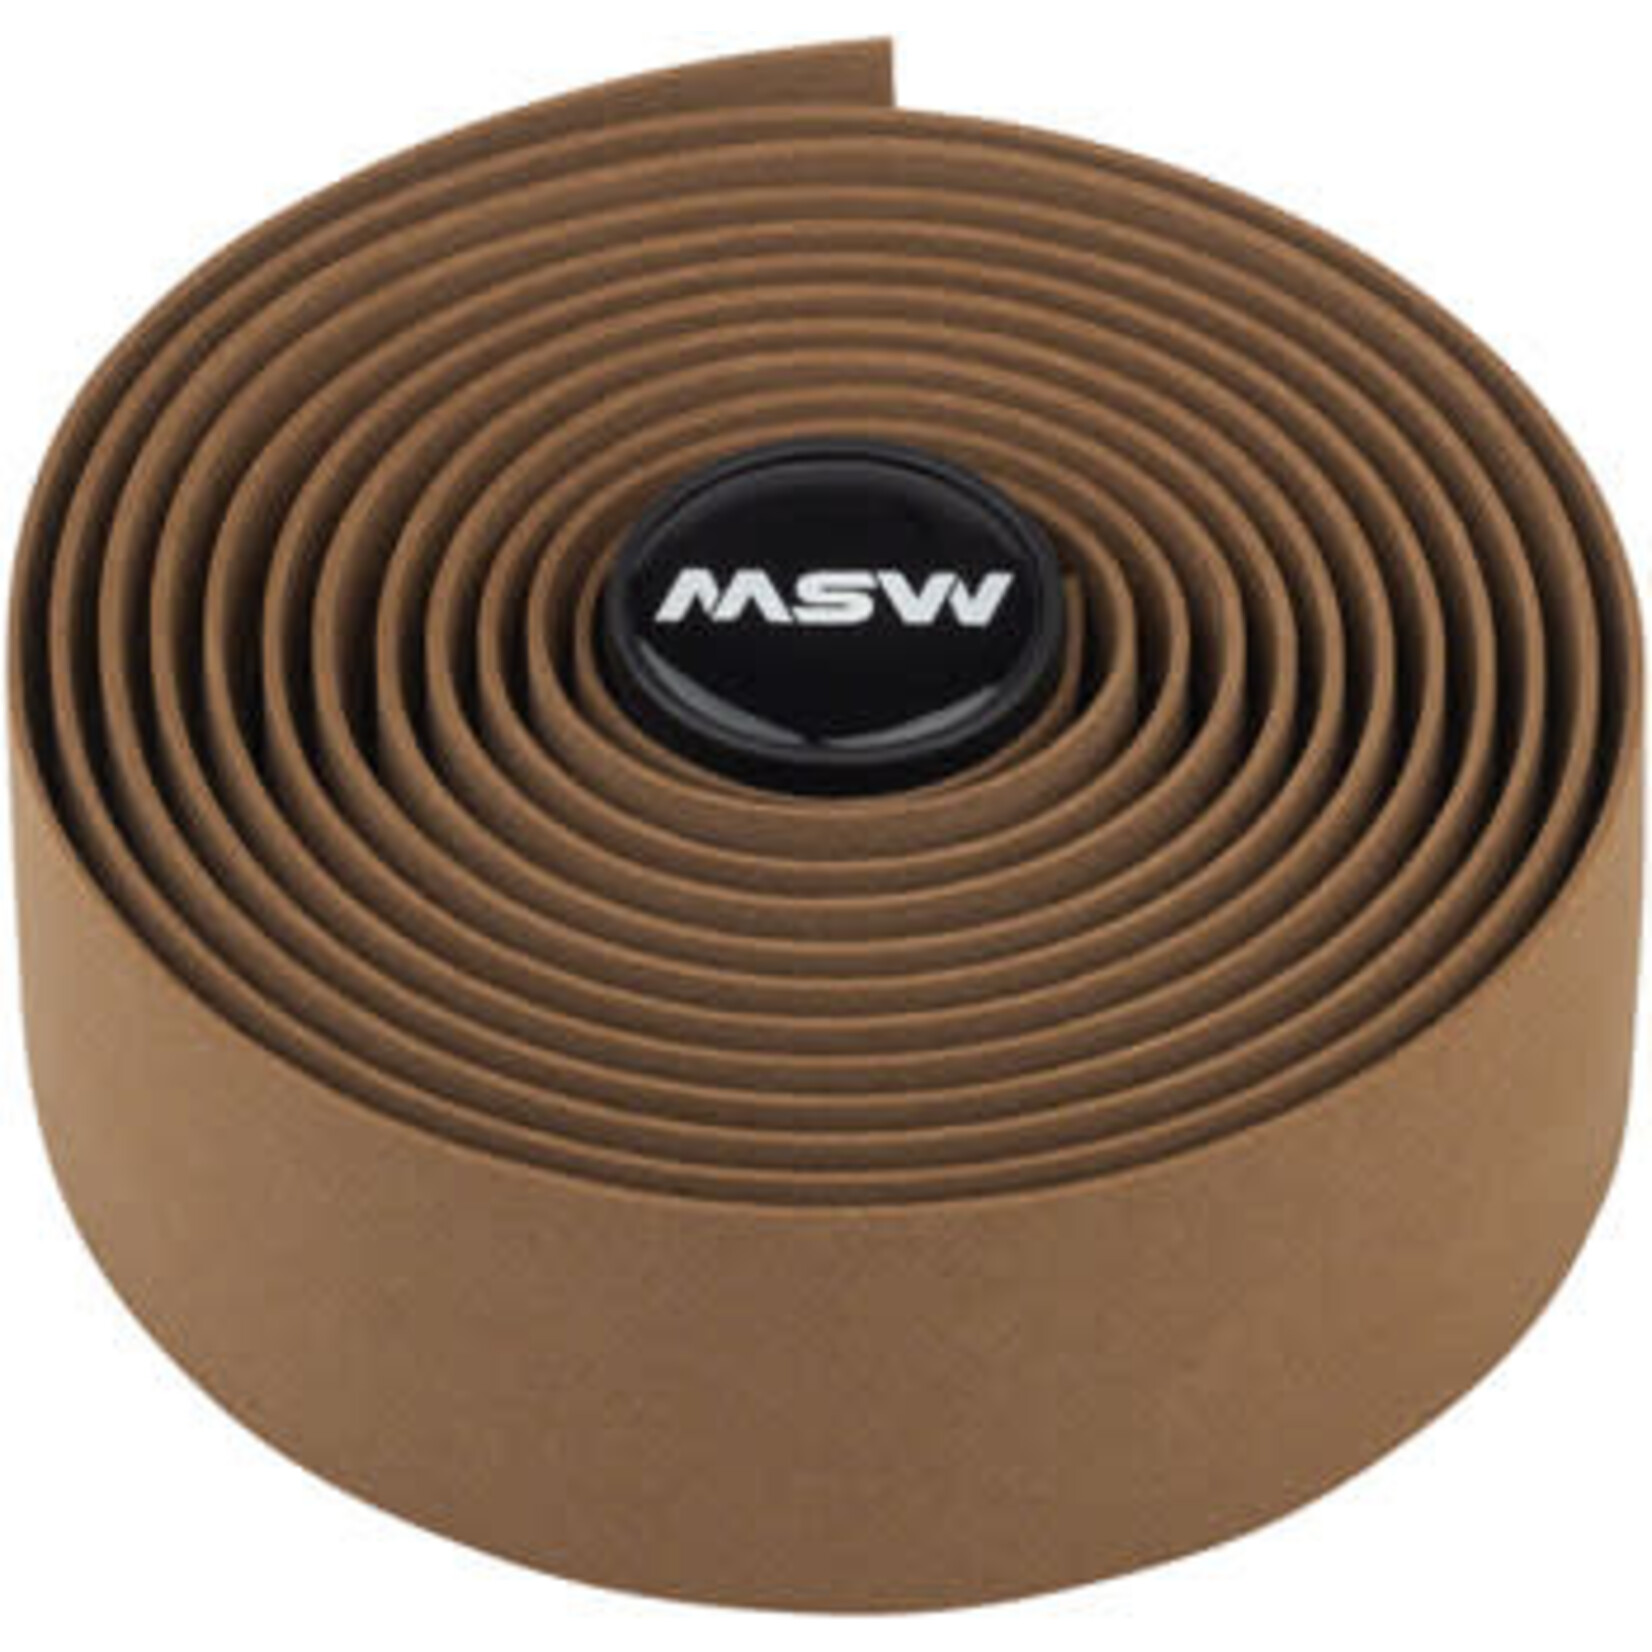 MSW MSW EVA Handlebar Tape - HBT-100, Dark Brown